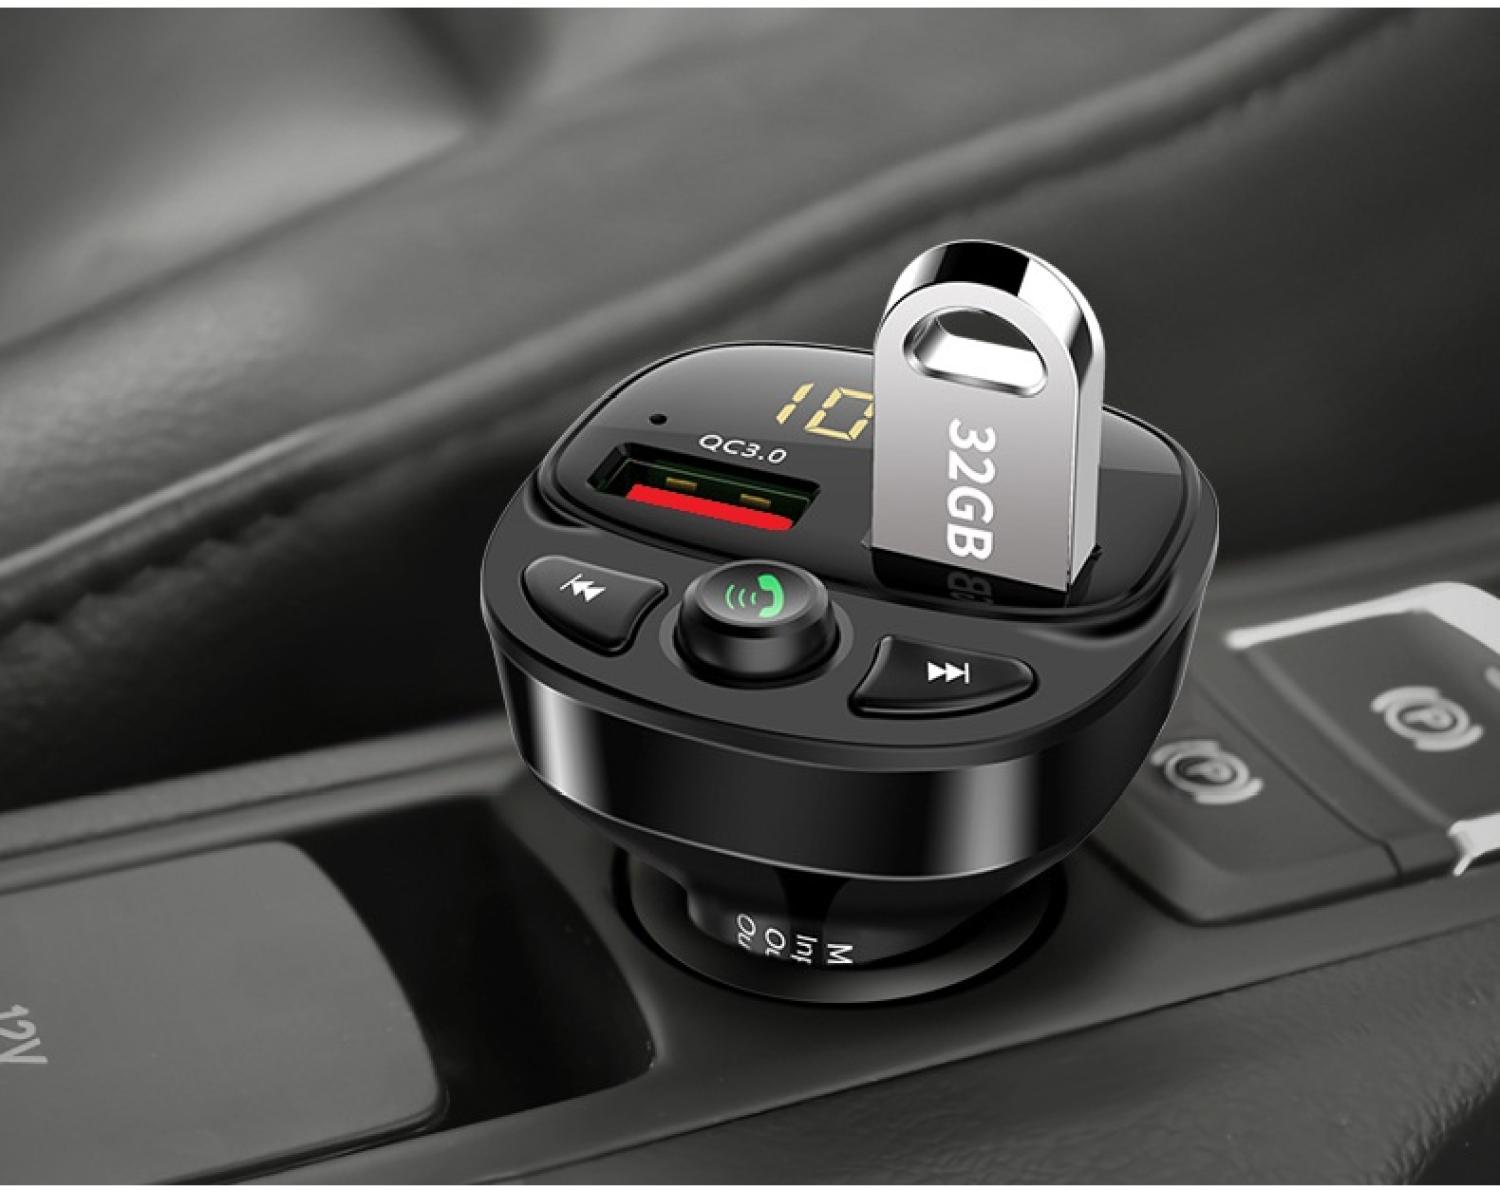 Tẩu sạc nghe nhạc MP3 HY 87 Bluetooth V5.0 dùng cho ô tô hai cổng sạc nhanh QC3.0, kết nối qua tần số đài FM trên xe với dàn âm thanh trên xe nghe nhạc đa phương tiện,